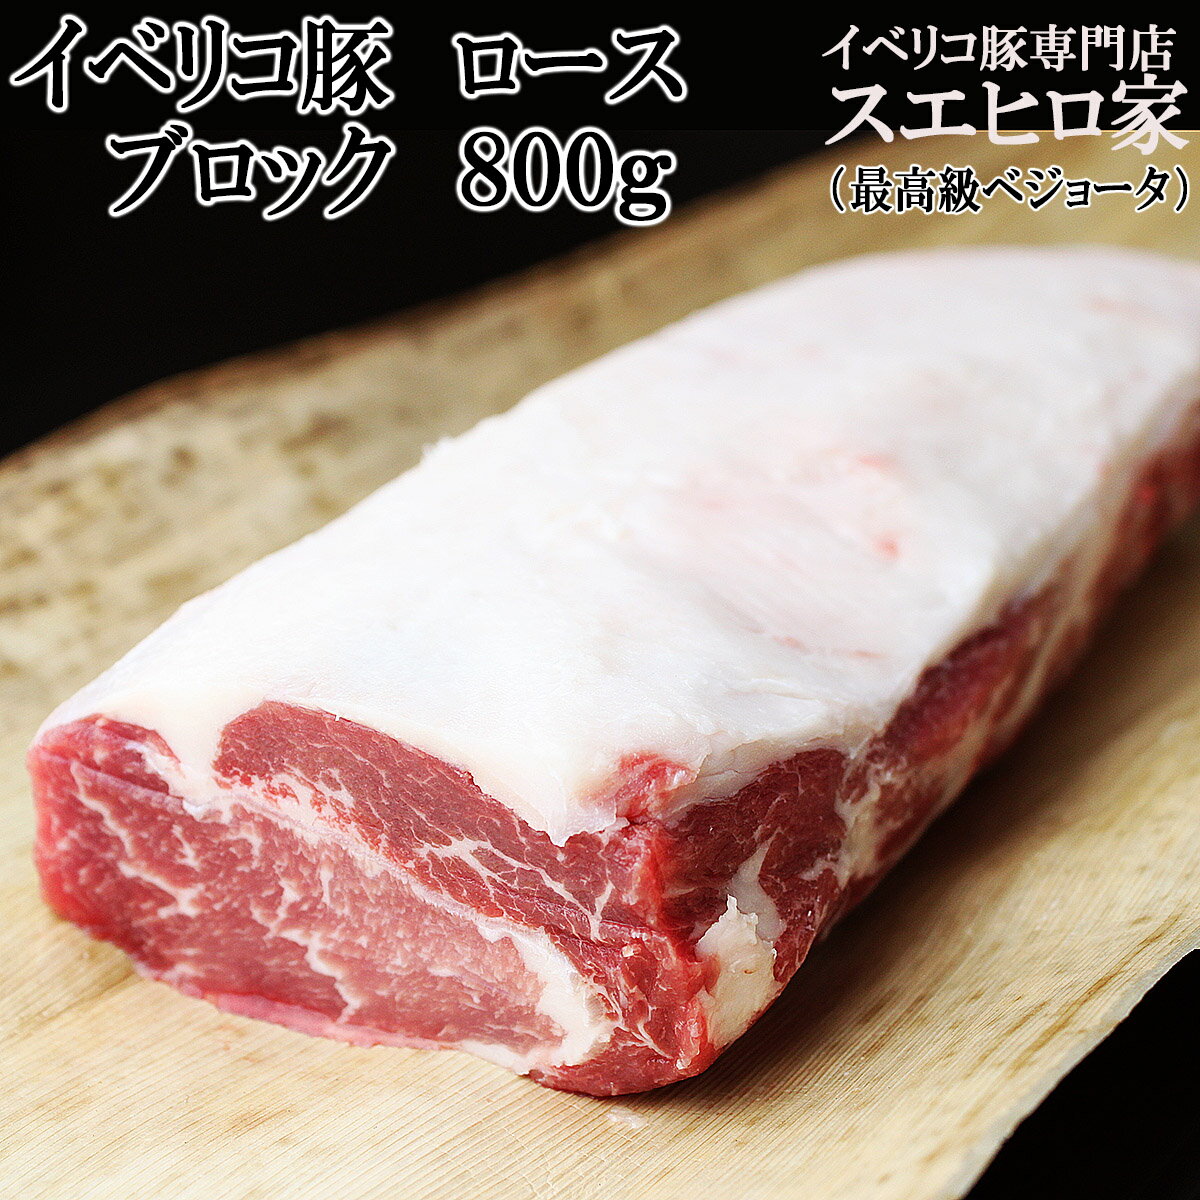 鹿児島県産黒豚使用ロースステーキ用 60g (個包装)×15